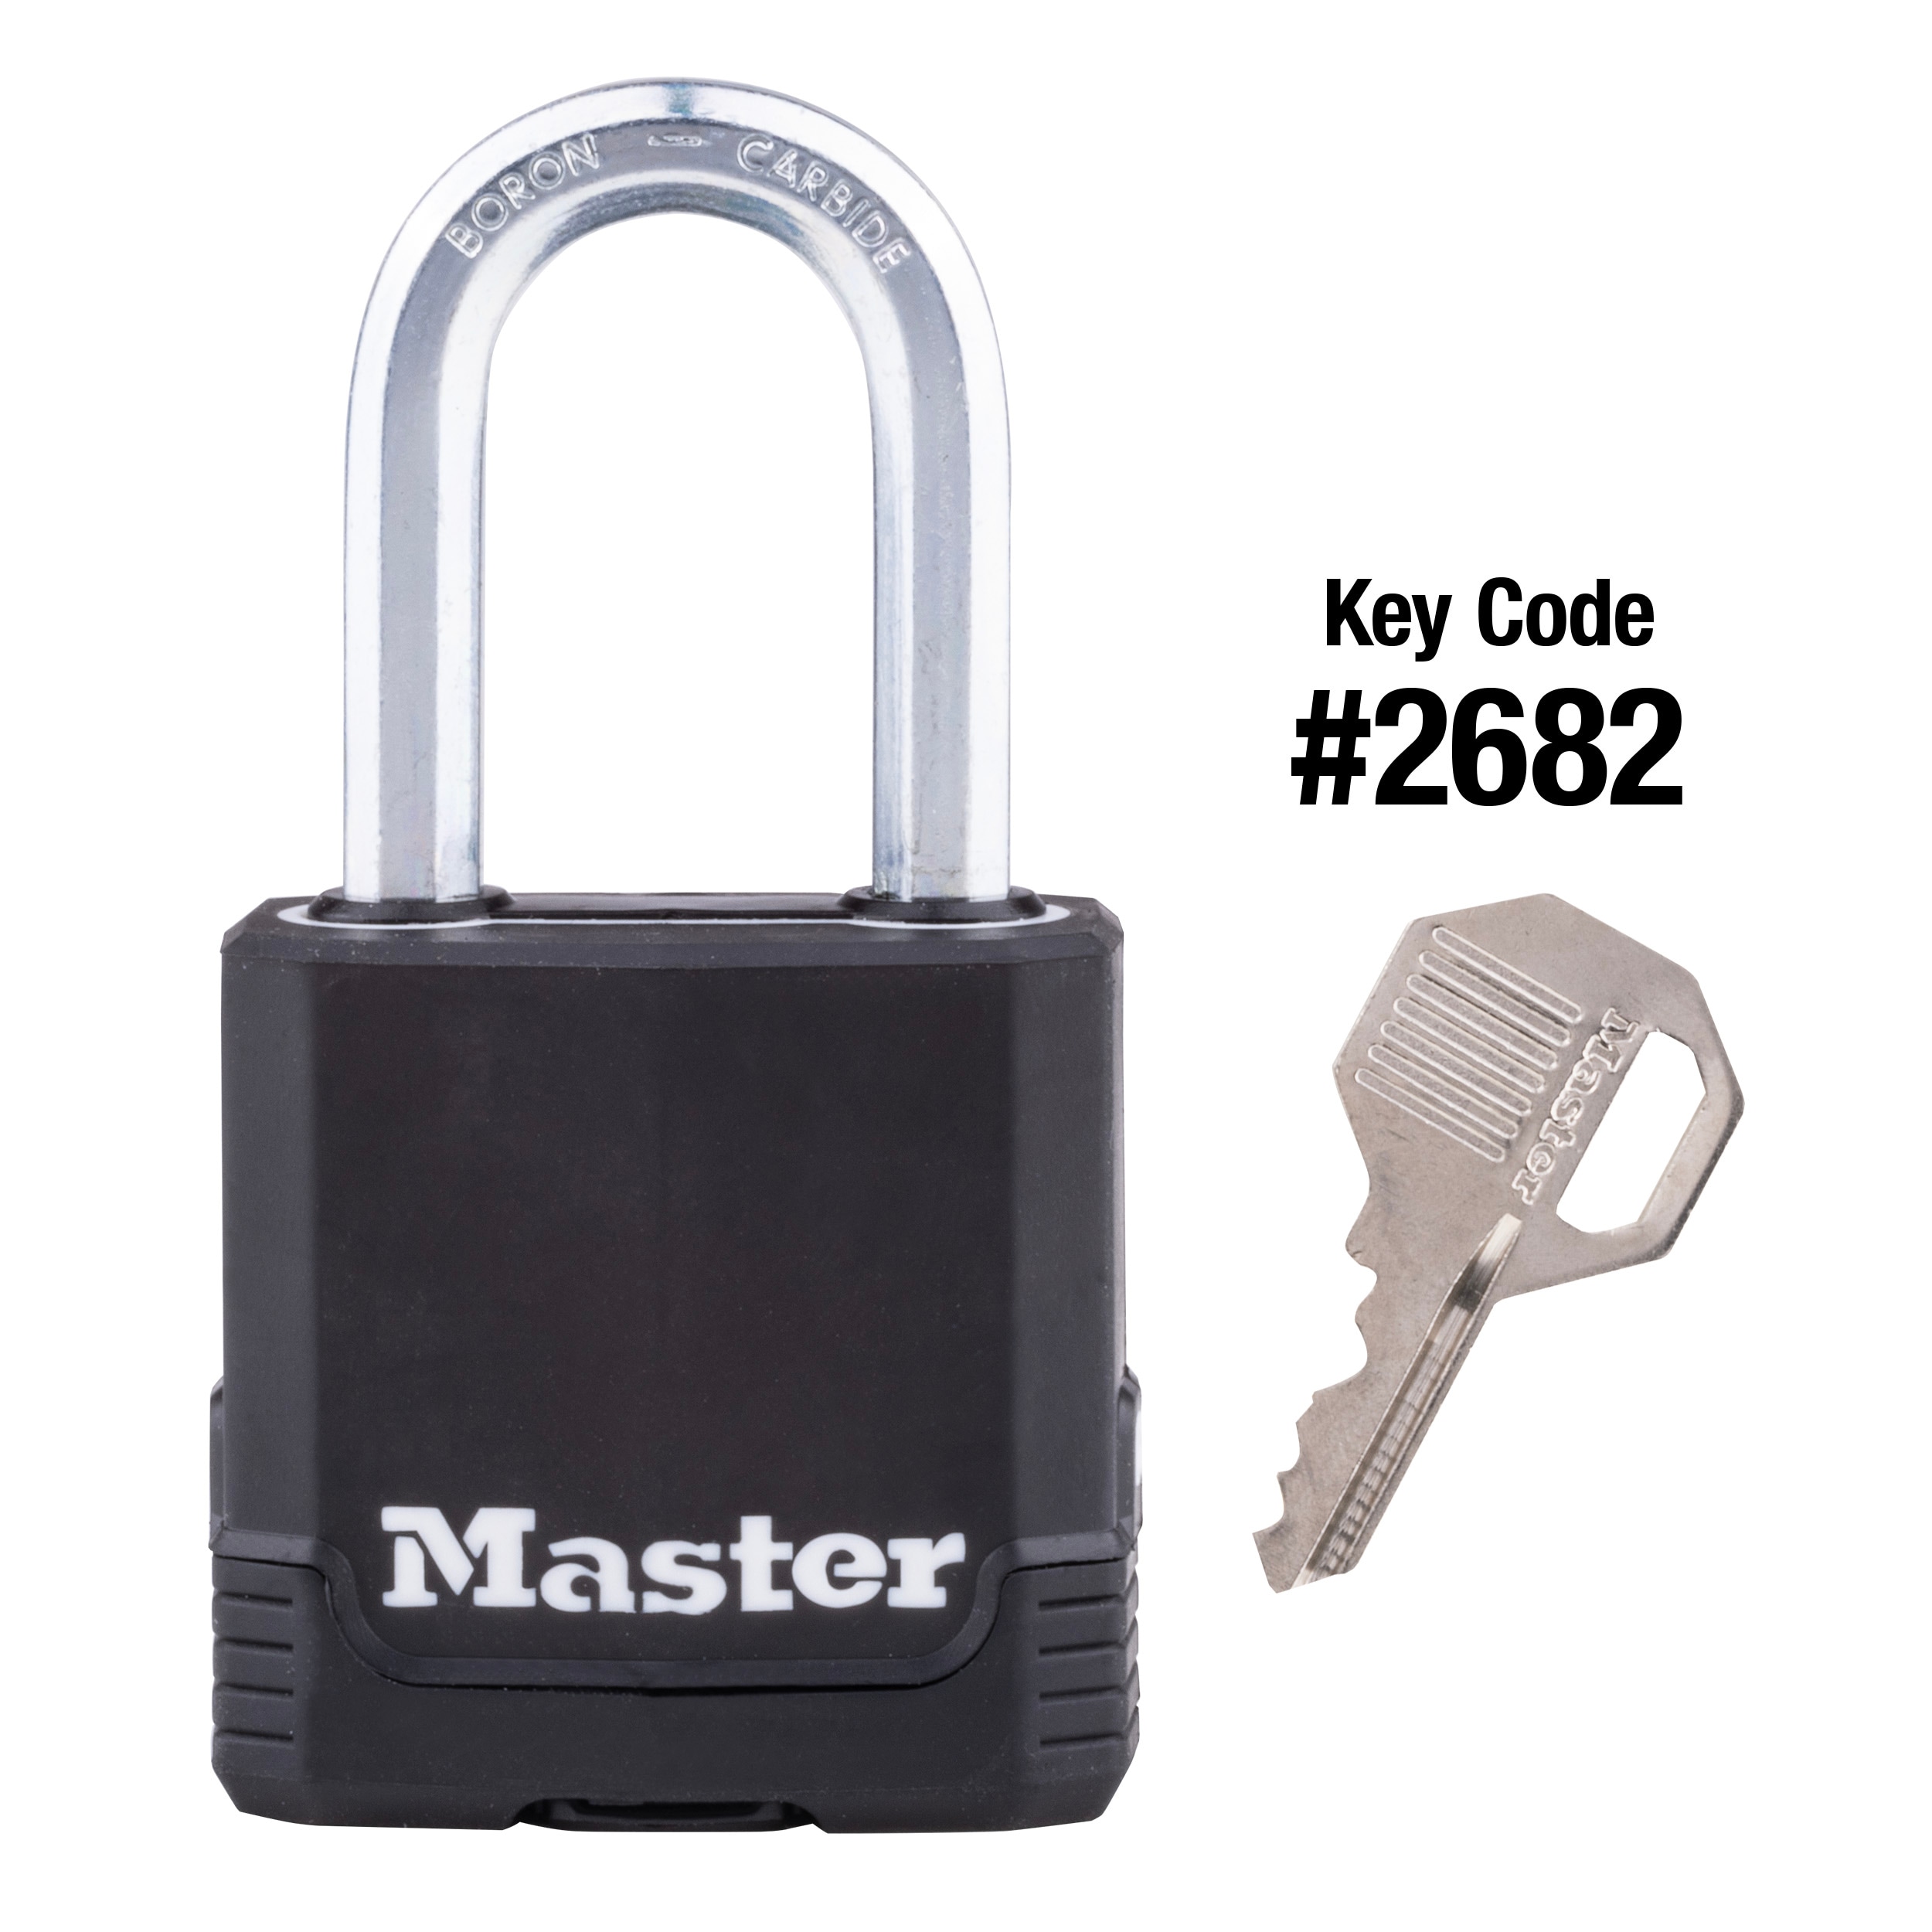 Master Lock Fusion Keyed U-Lock, Black